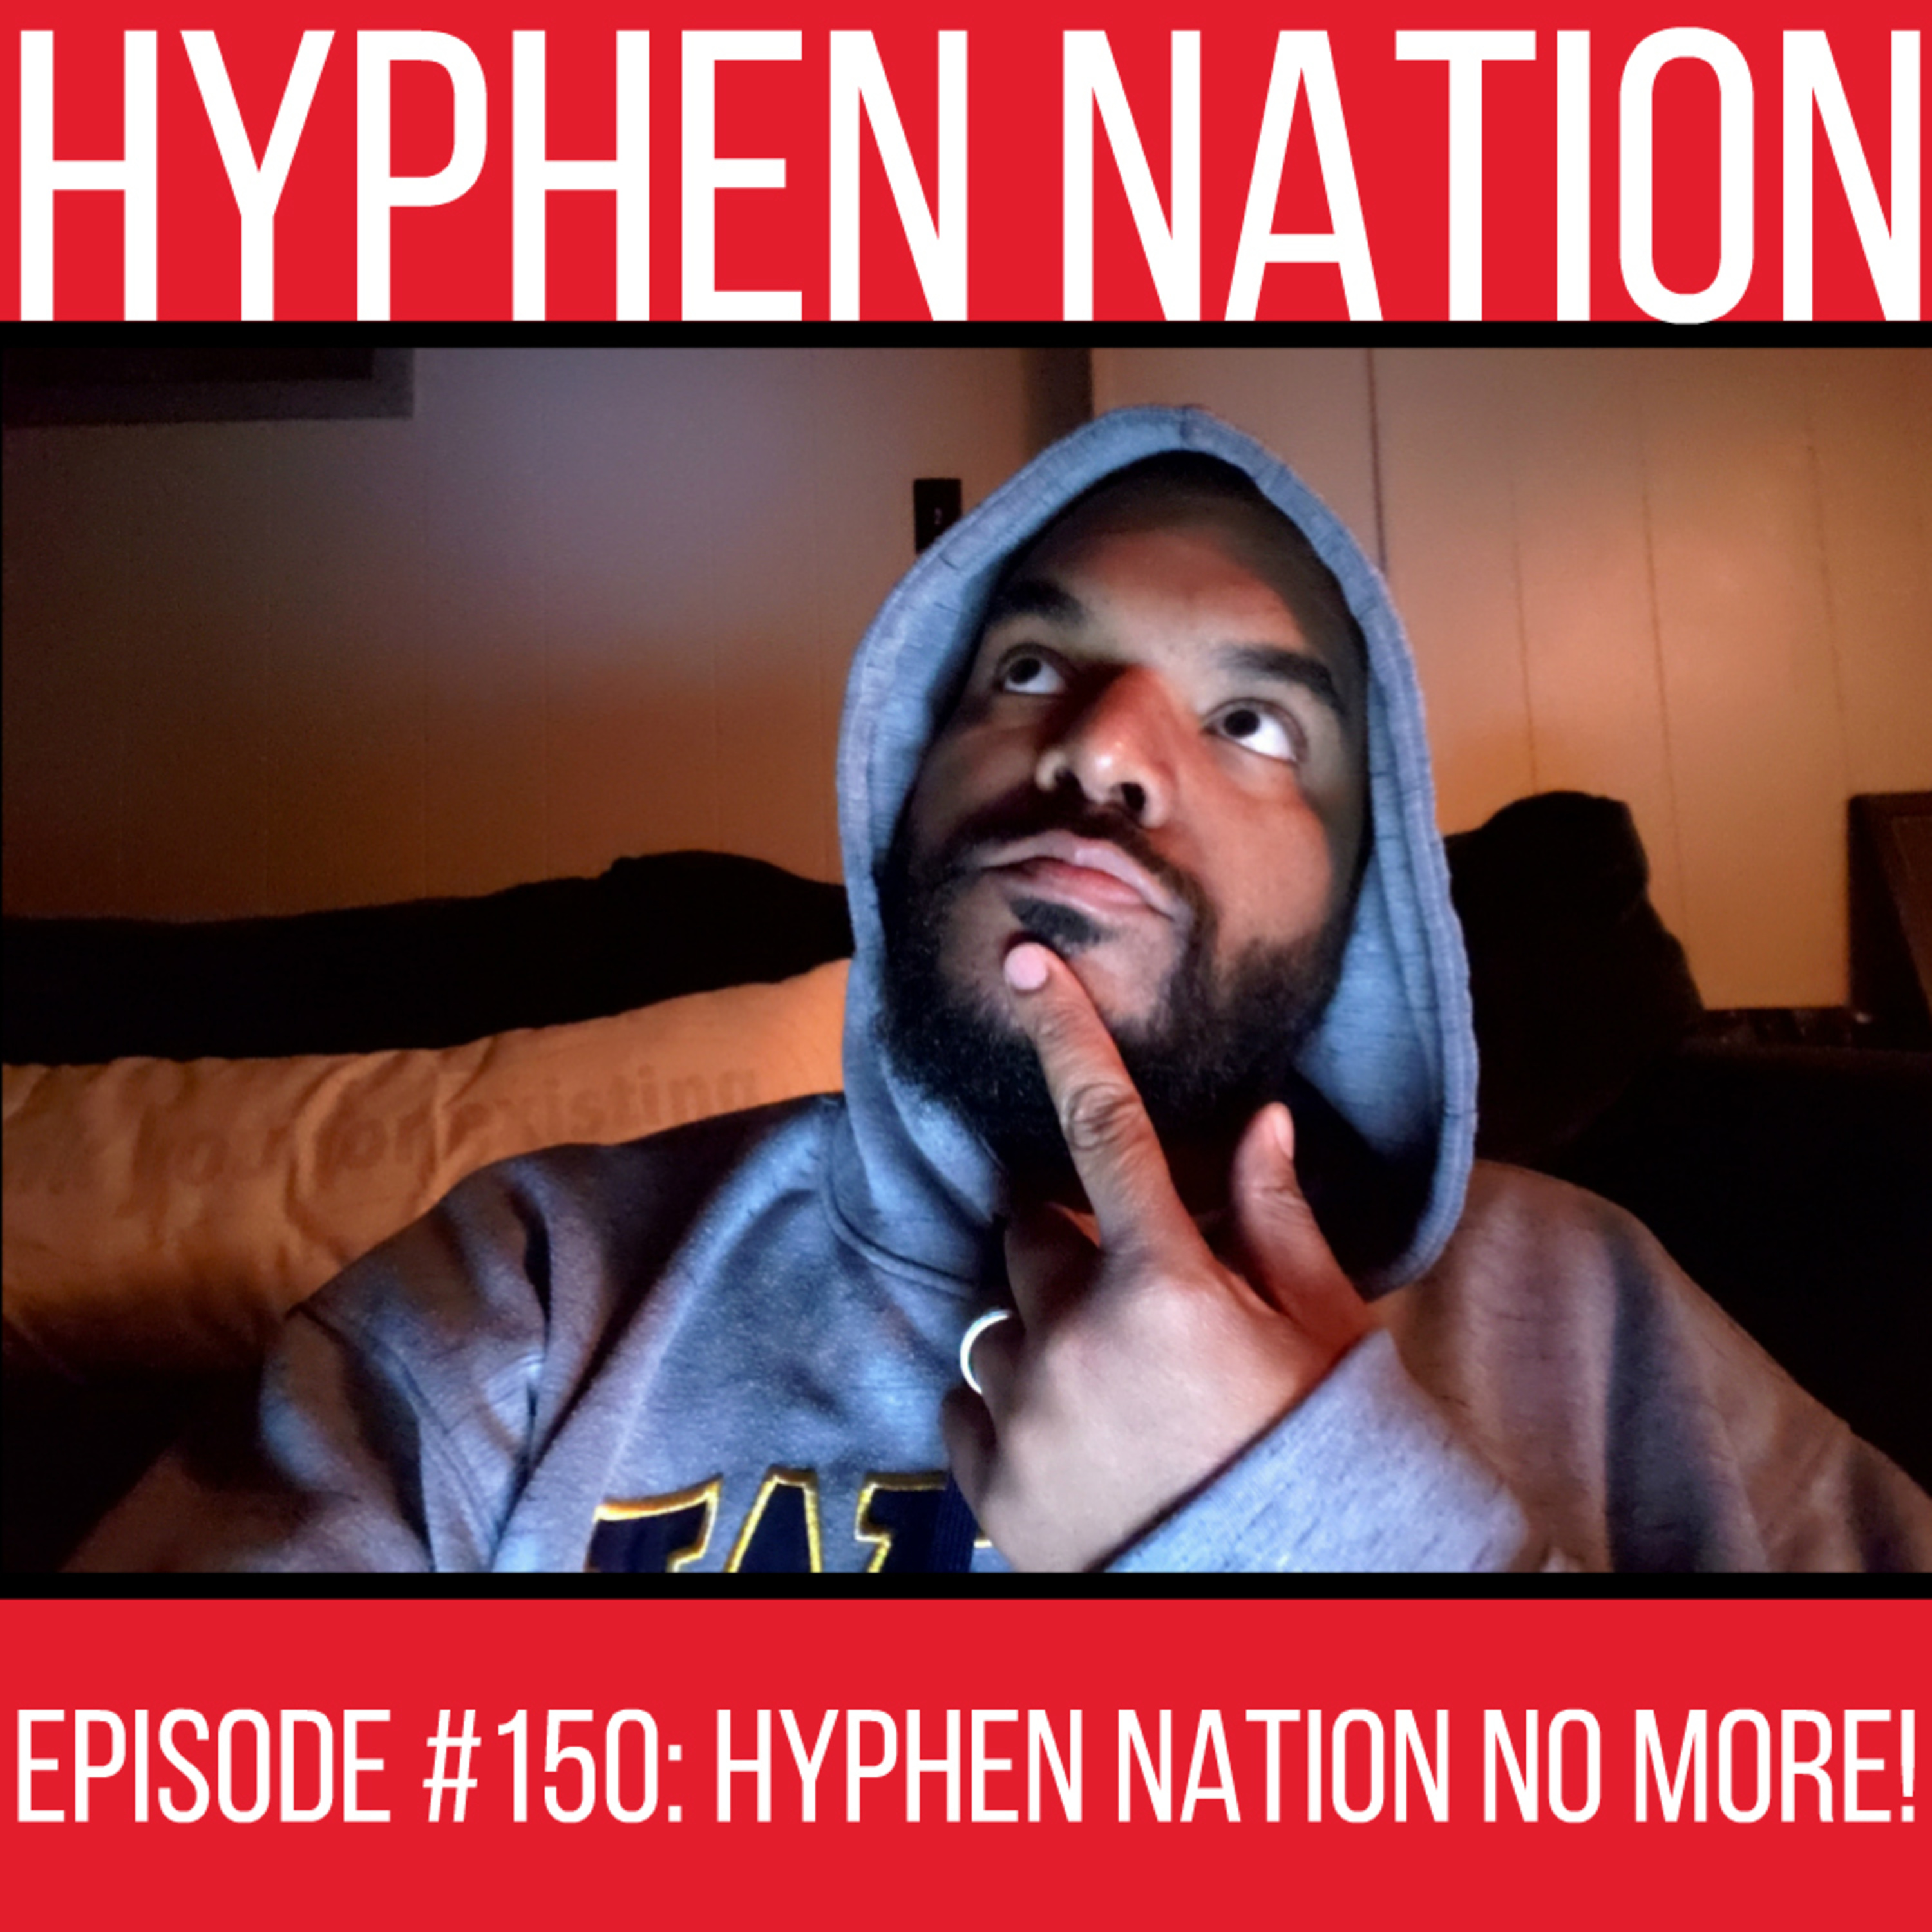 Episode #150: Hyphen Nation No More!